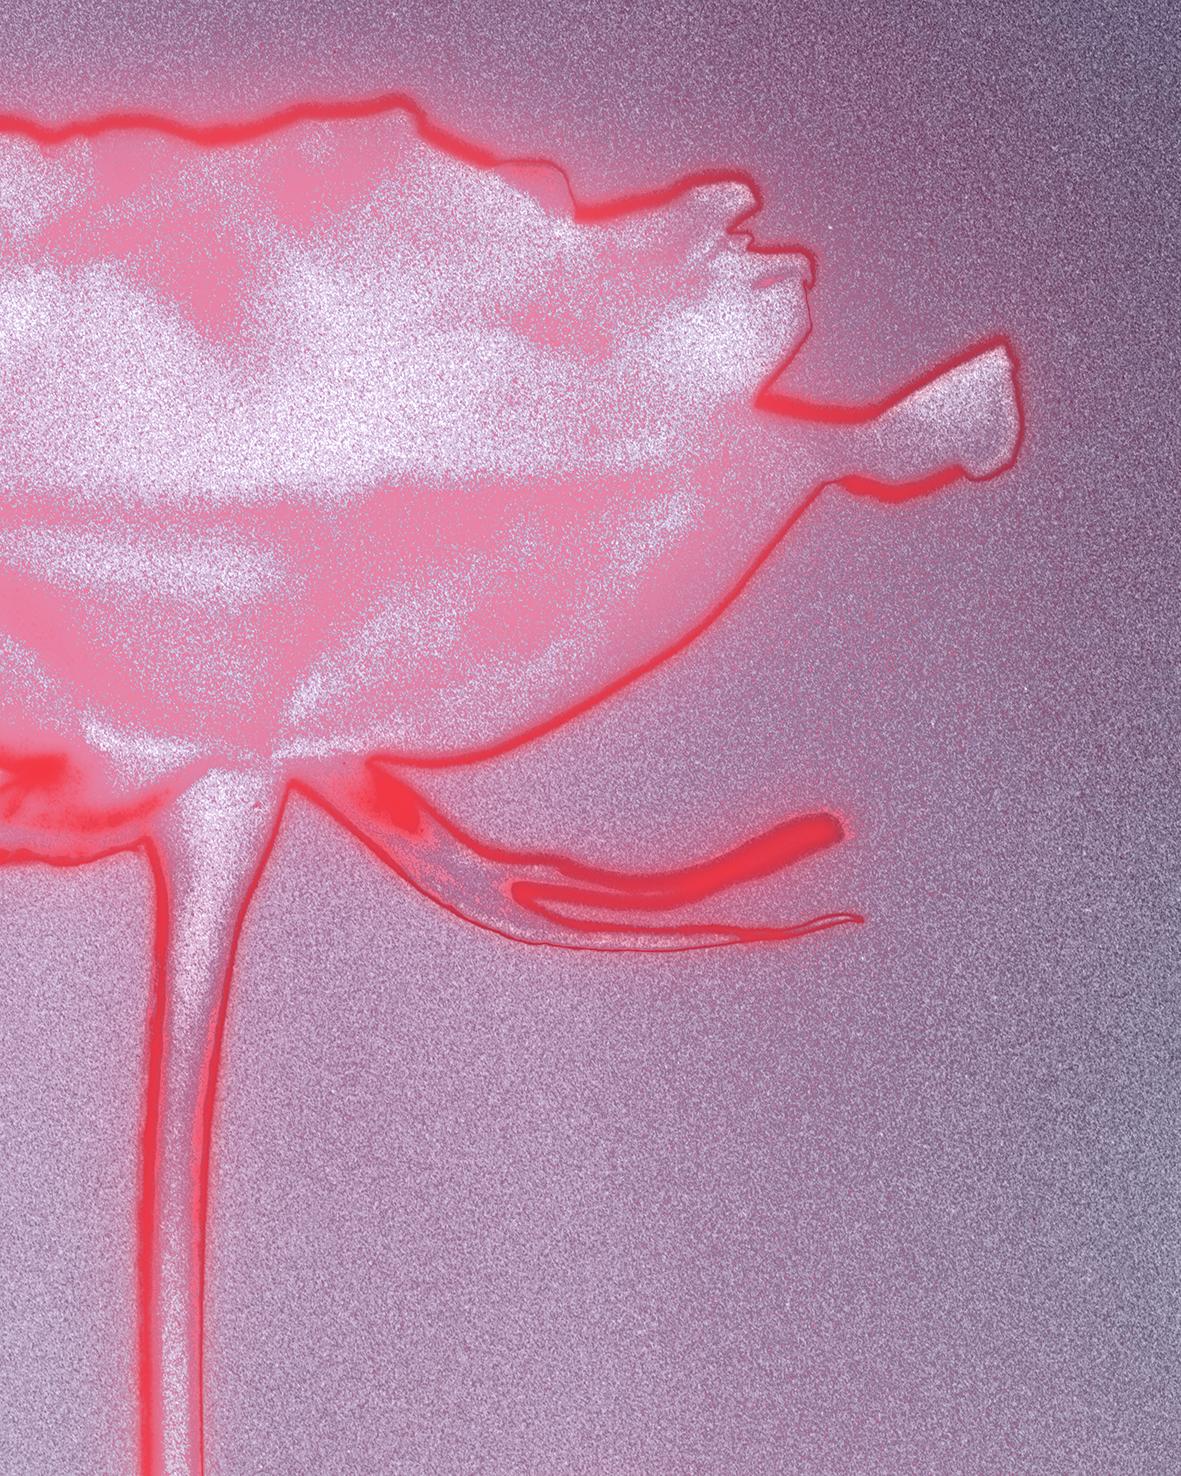 „Rose glow“ eine analoge Stillleben-Fotografie, zeitgenössische Mischtechnik, rosa/rot – Photograph von Ugne Pouwell